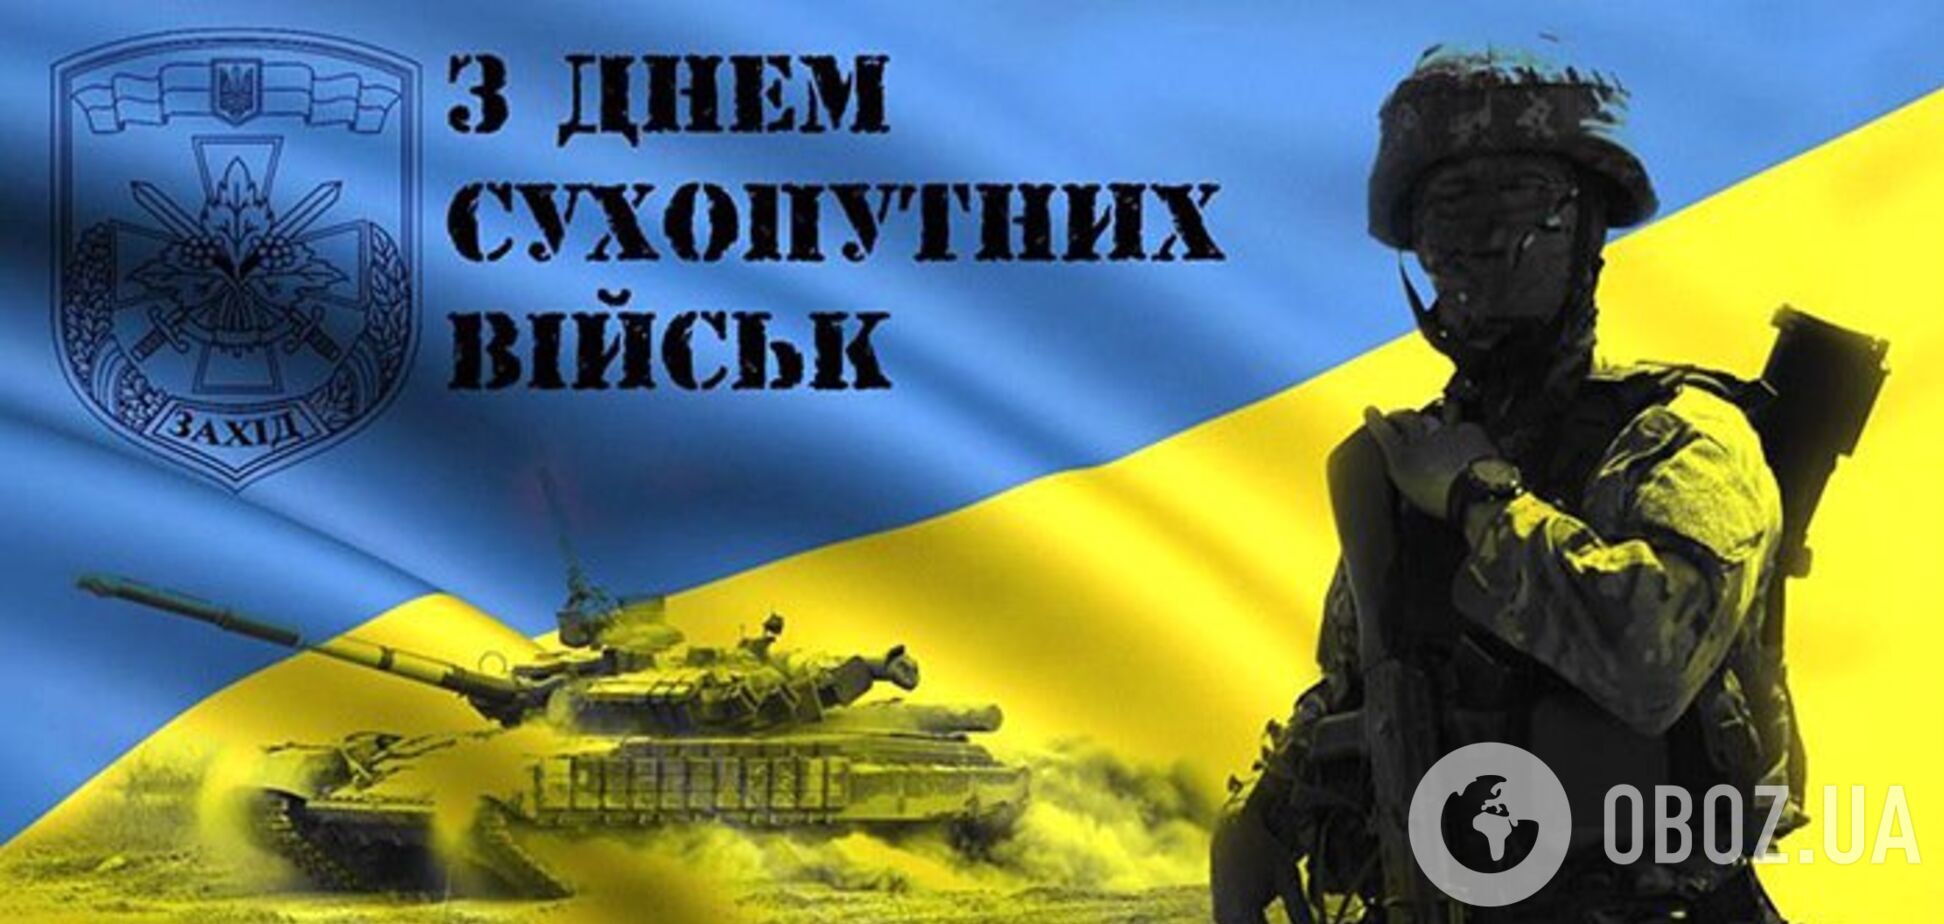 День сухопутных войск Украины